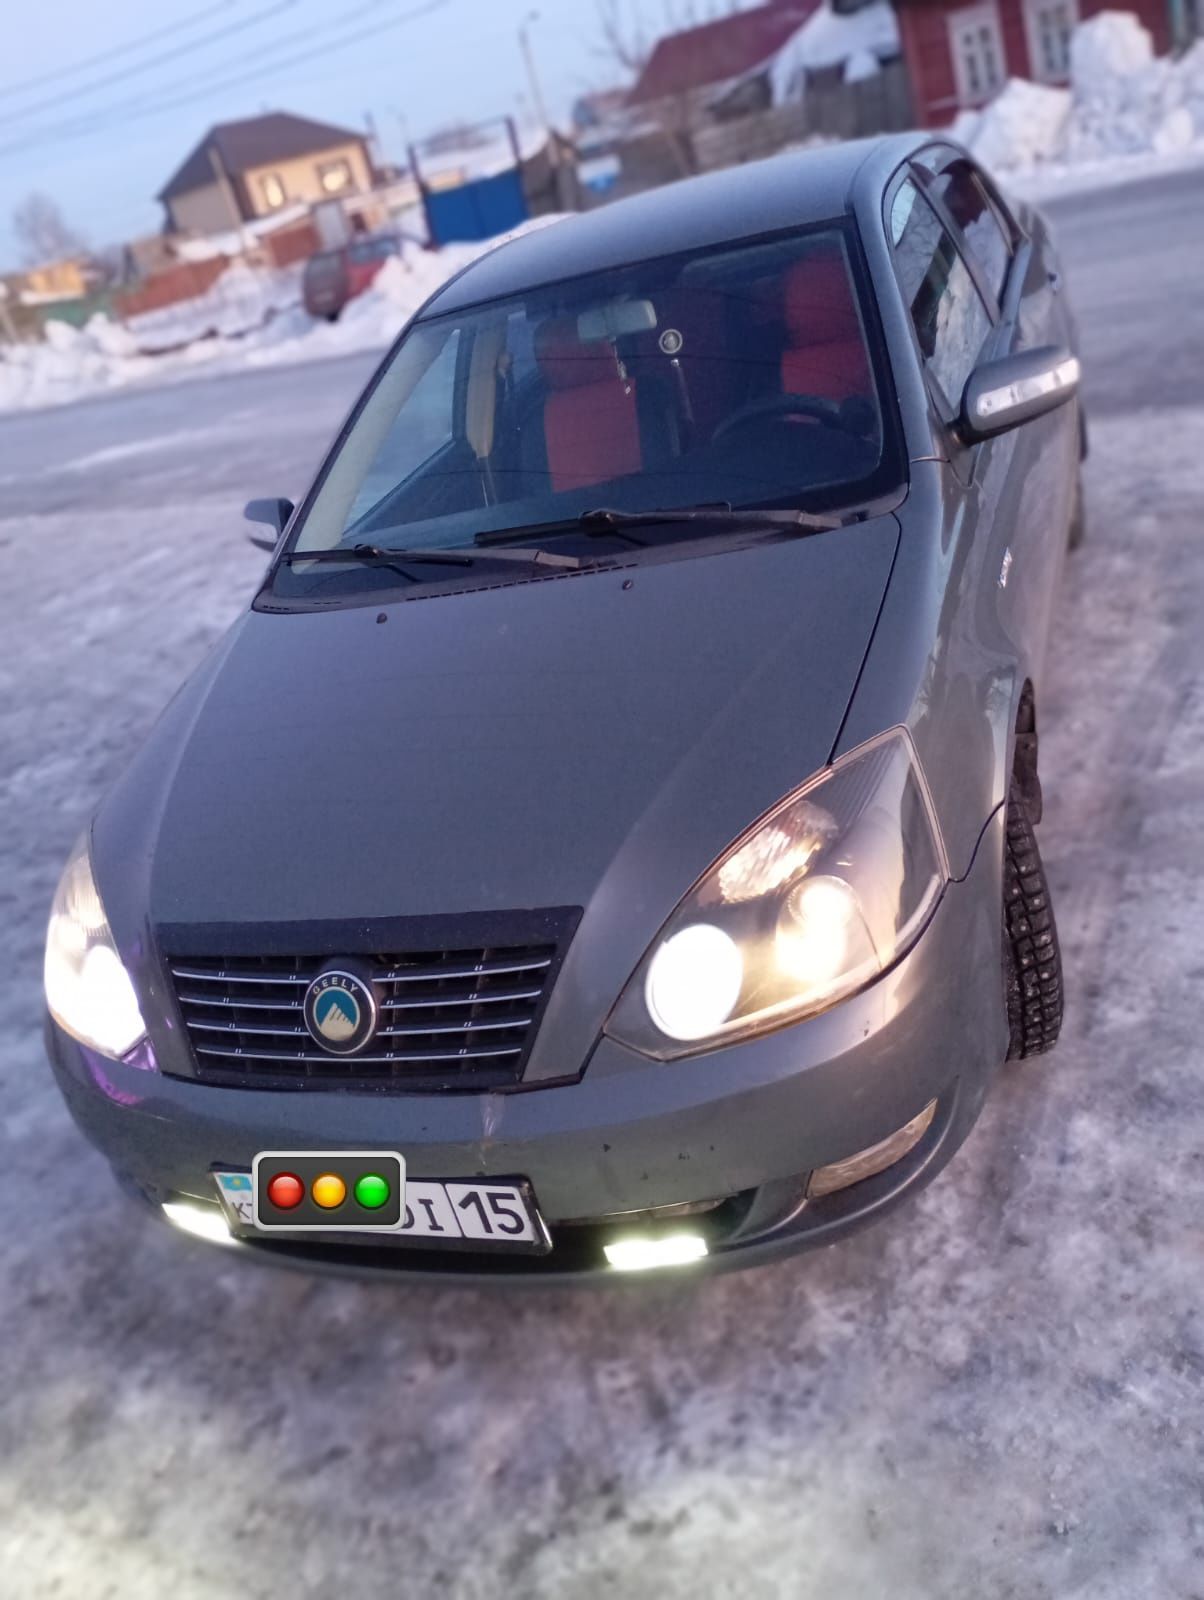 Купить машину - бу авто в рассрочку в Украине. Бу автомобили от Likecars